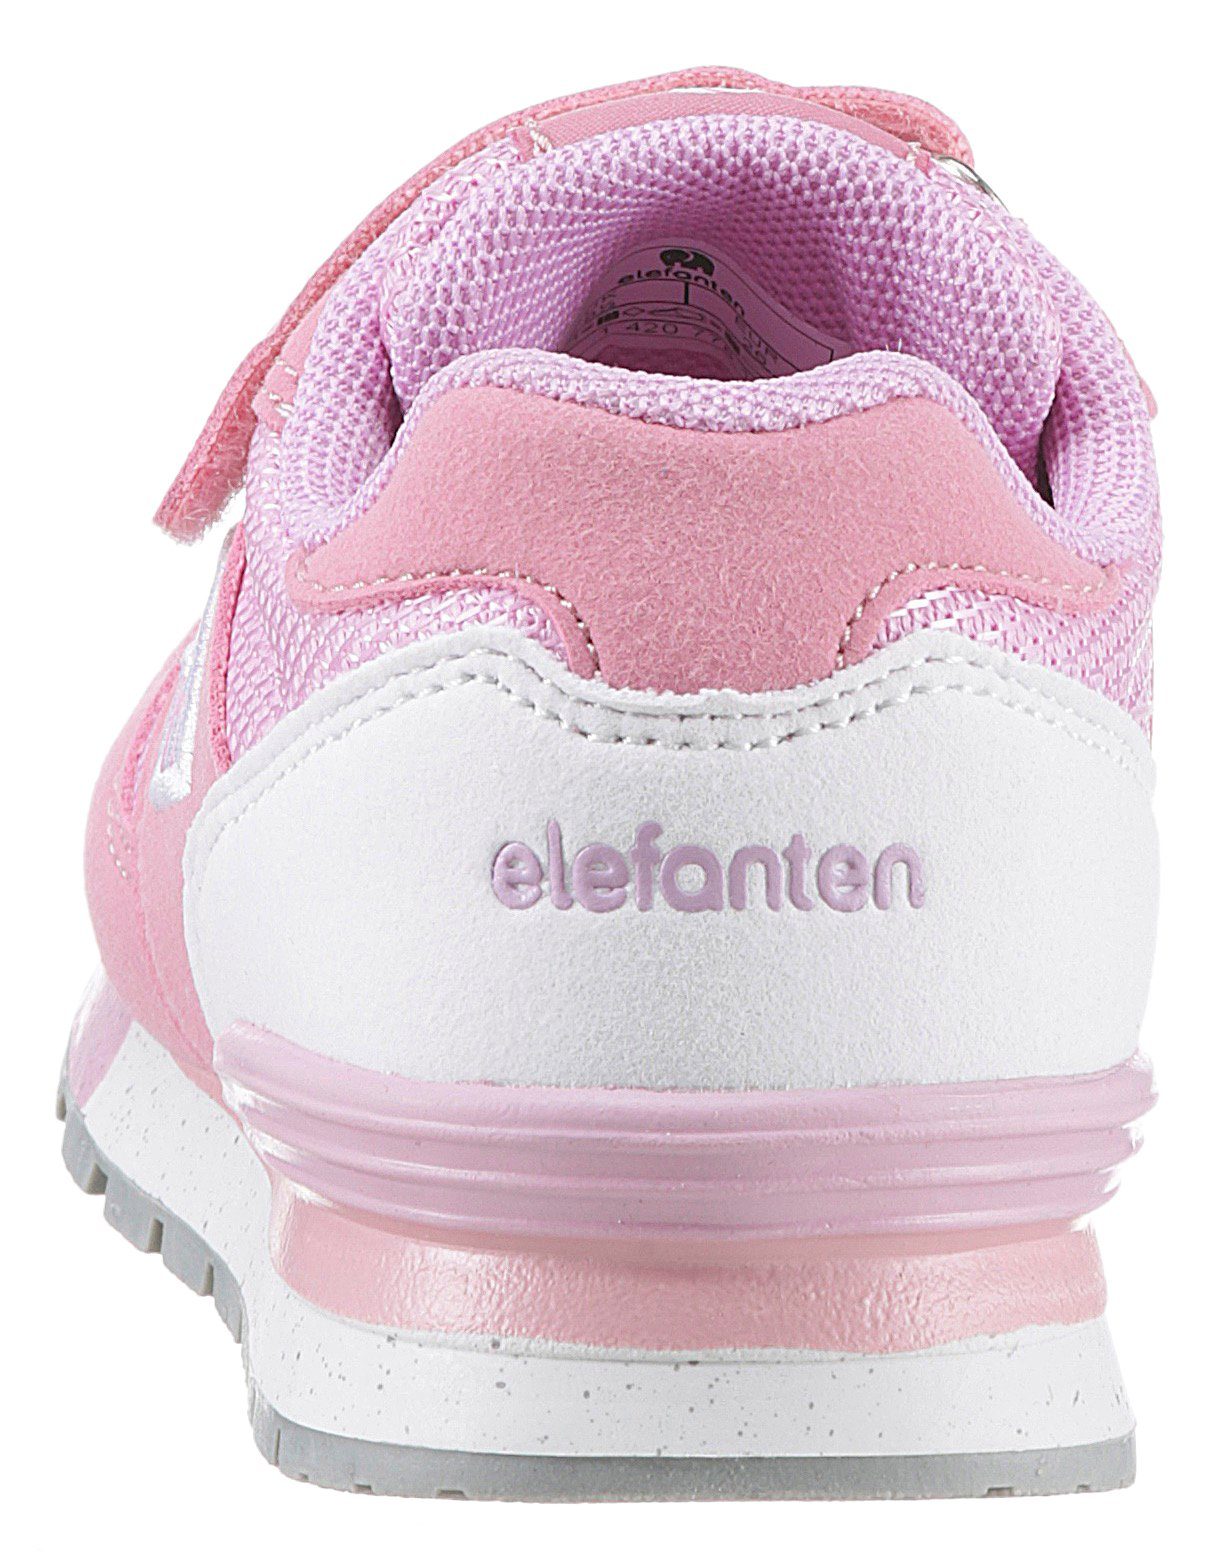 Weit Foam ELEFANTEN Hoppy Sneaker WMS: Memory weichem pink-flieder mit